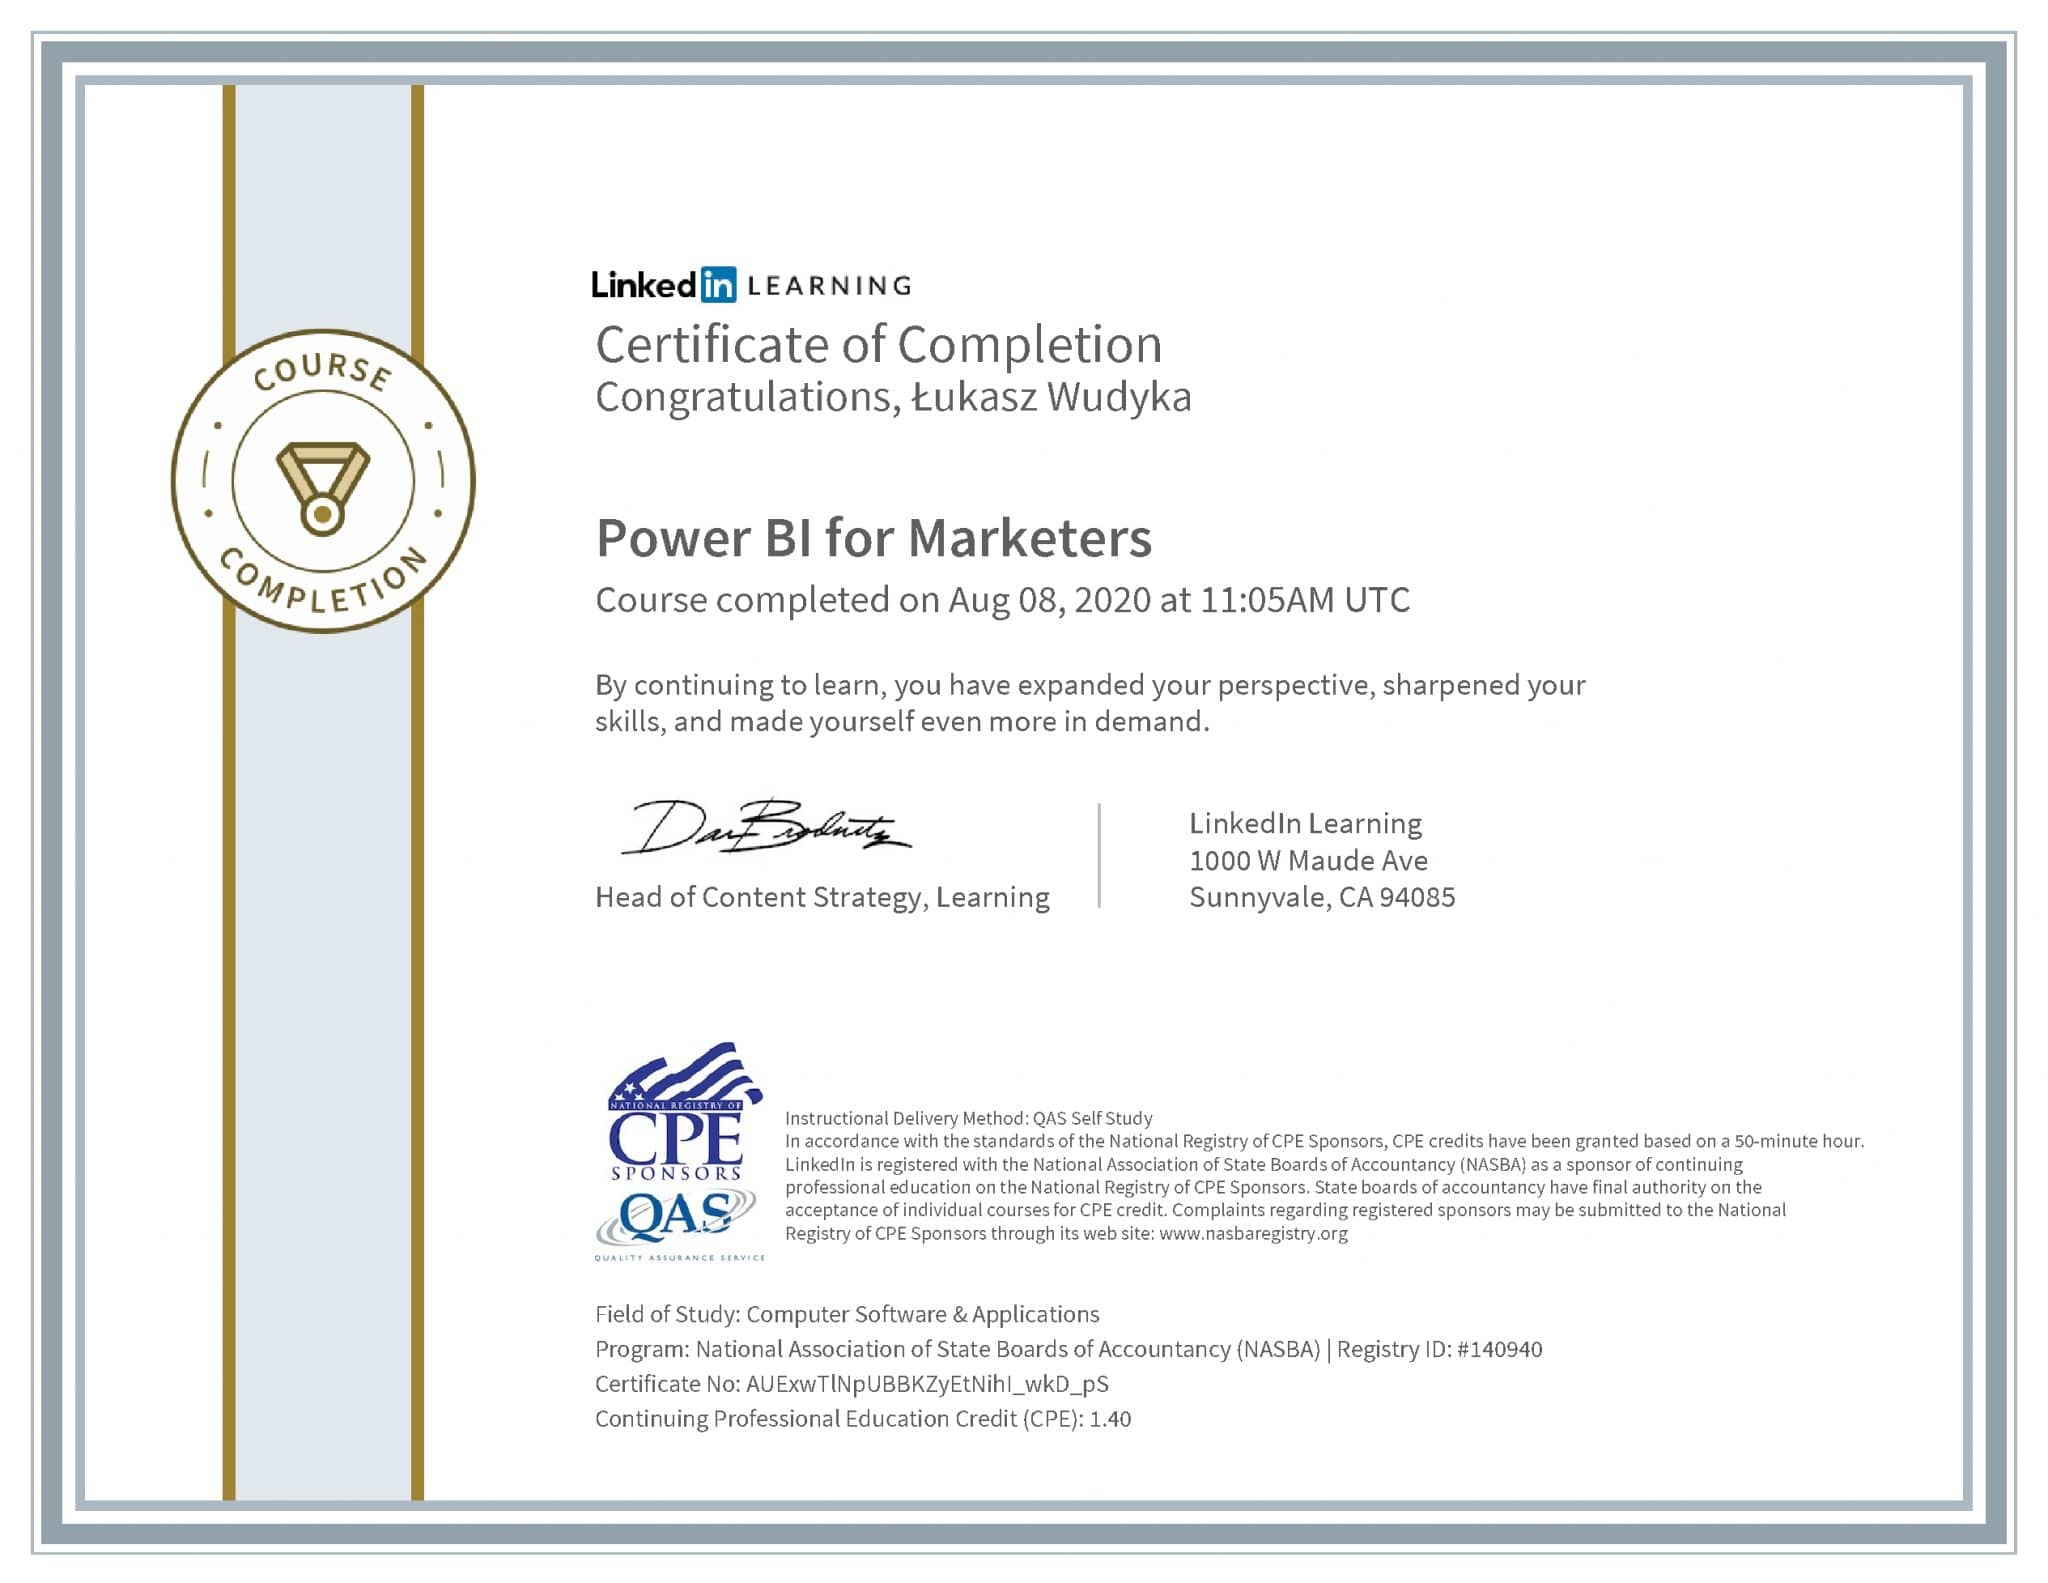 Łukasz Wudyka certyfikat LinkedIn Power BI for Marketers NASBA